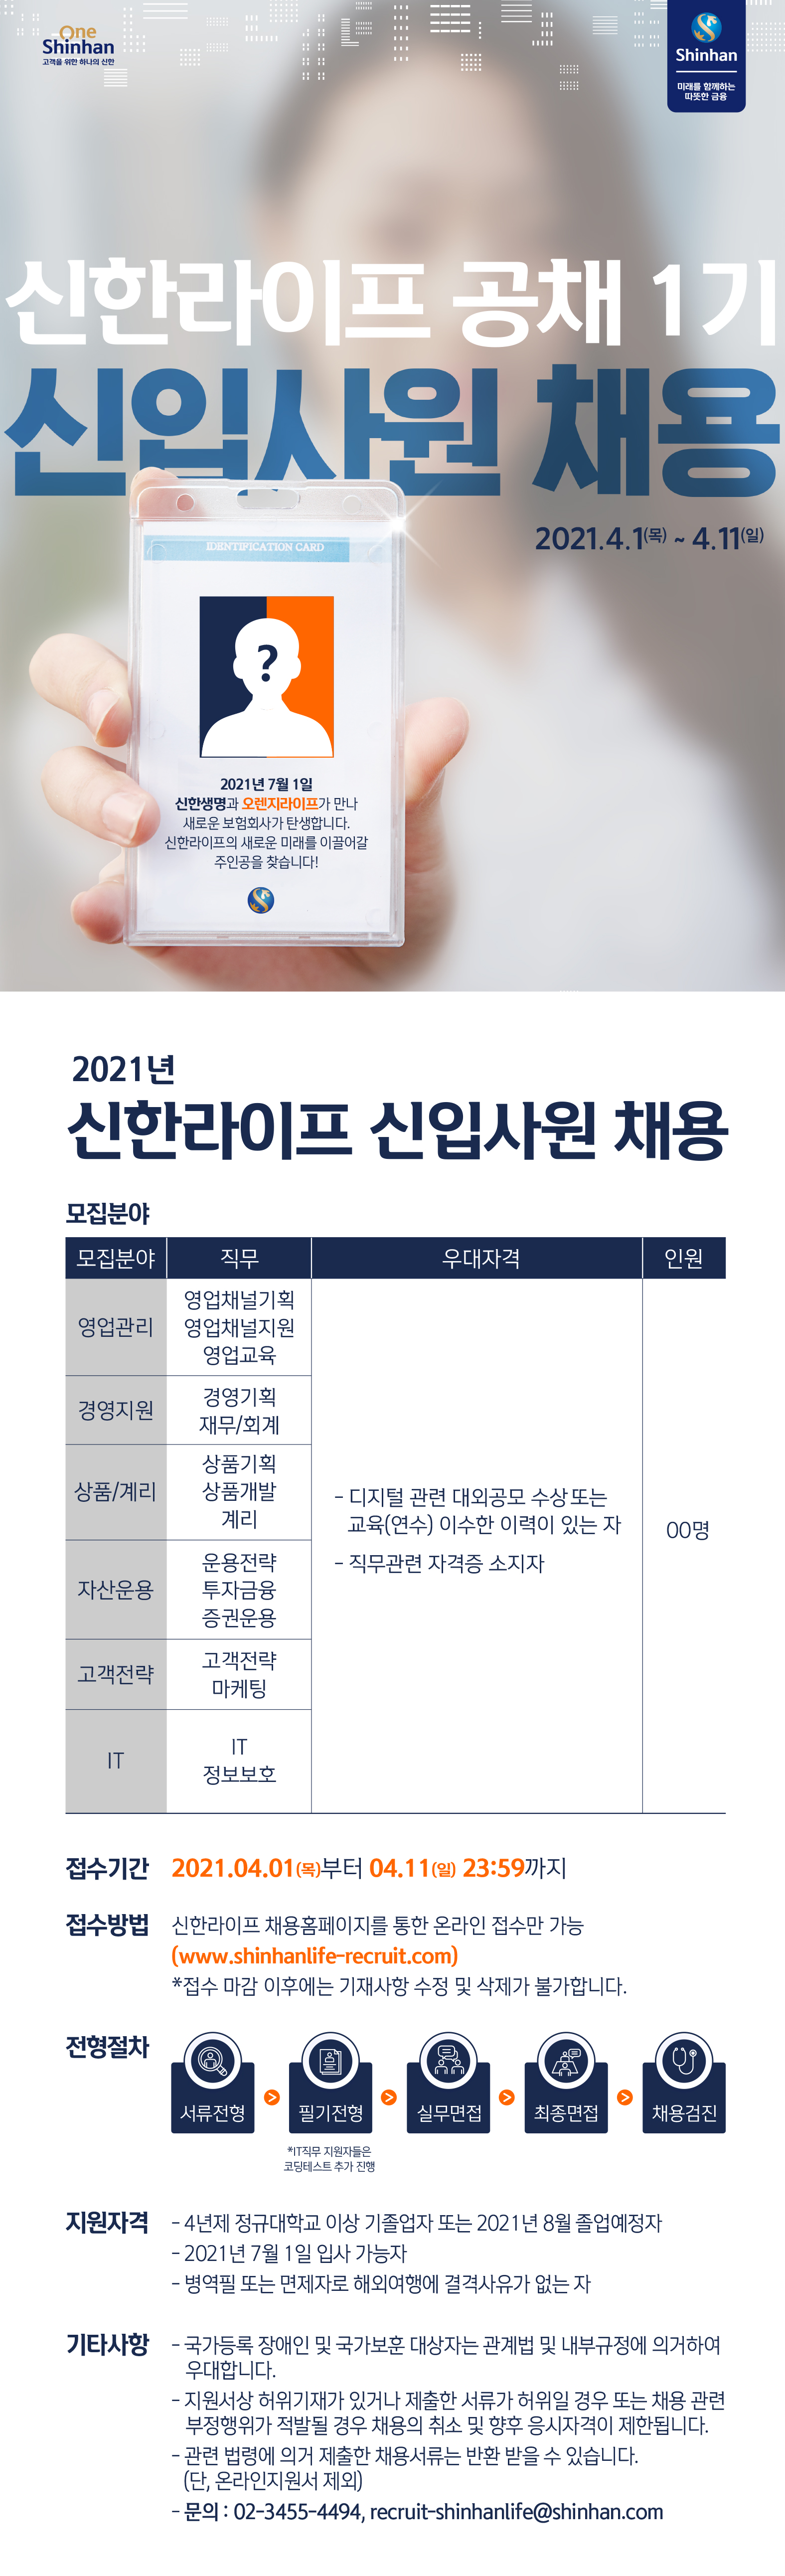 [채용] 2021 신한라이프 신입사원 공채 1기 모집